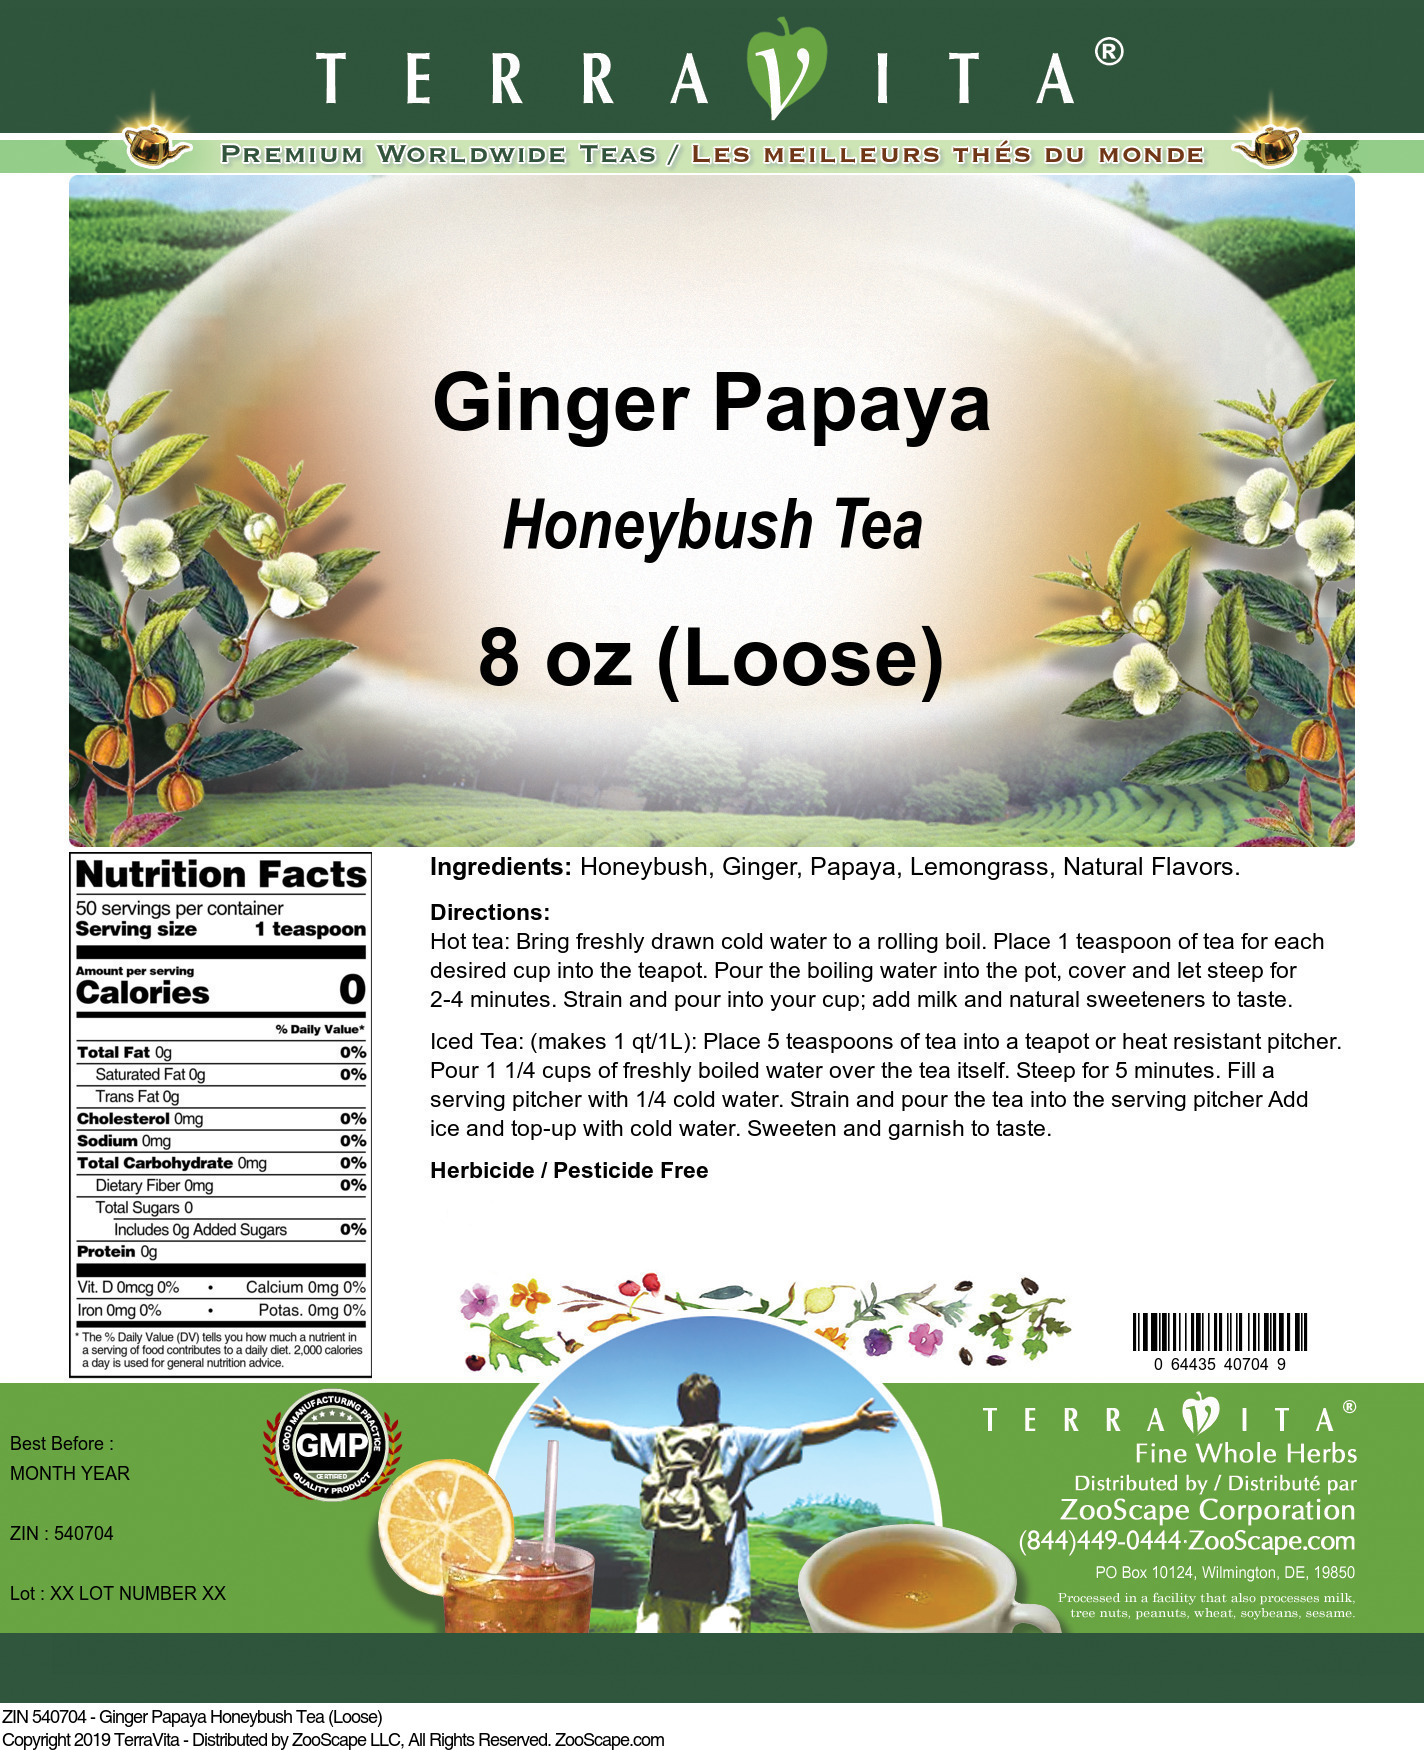 Ginger Papaya Honeybush Tea (Loose) - Label